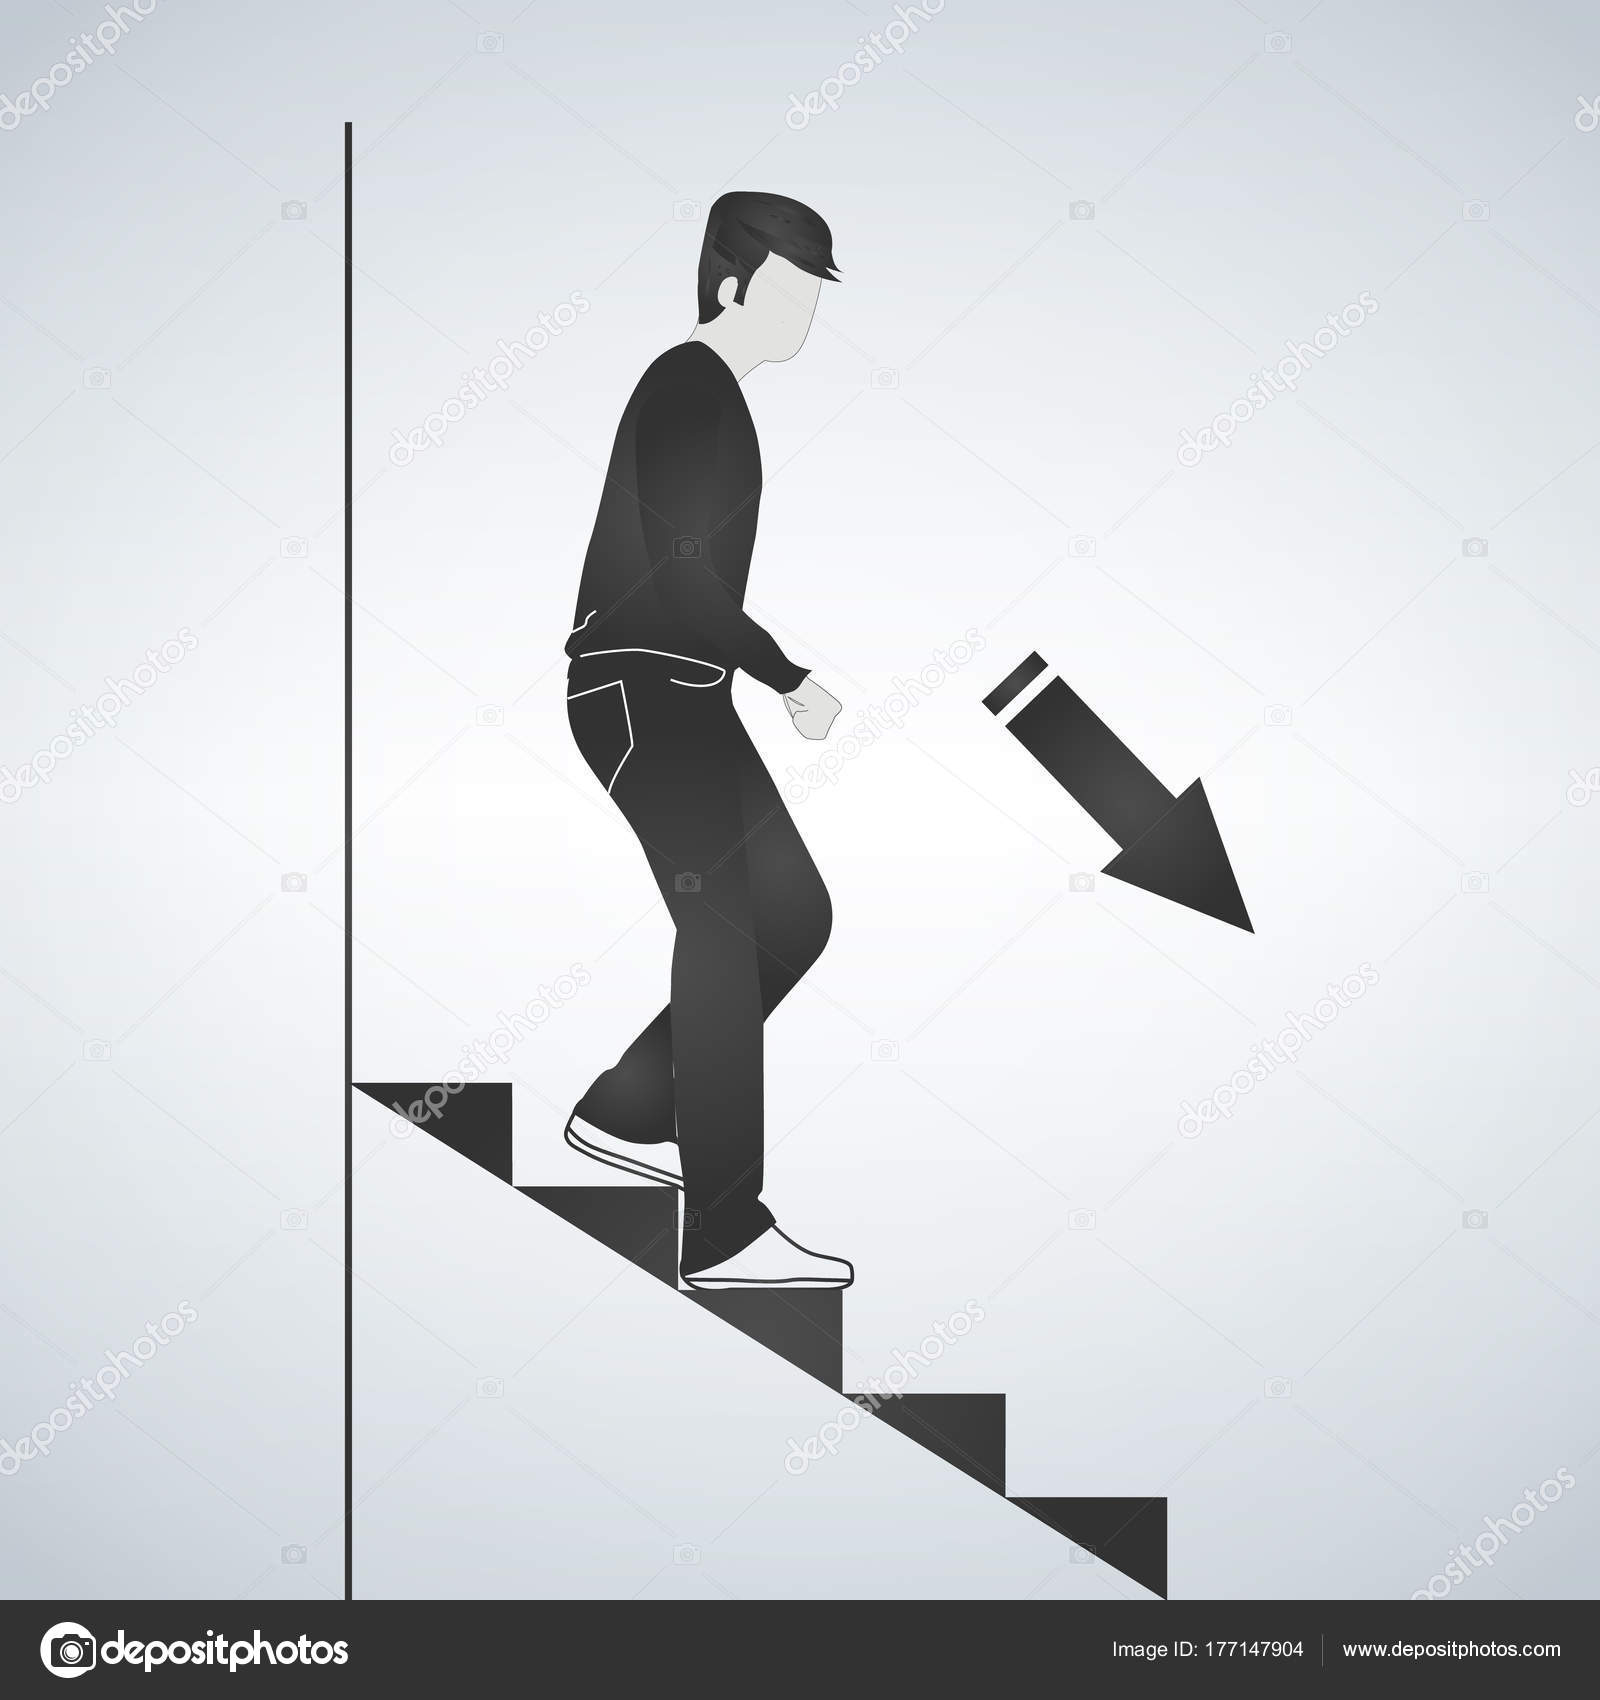 Не толкать впереди идущих по лестнице. Человек спускается по лестнице. Человек спускается с лестницы. Человек спускается по ступенькам. Селовек спускаеися по лес Нице.